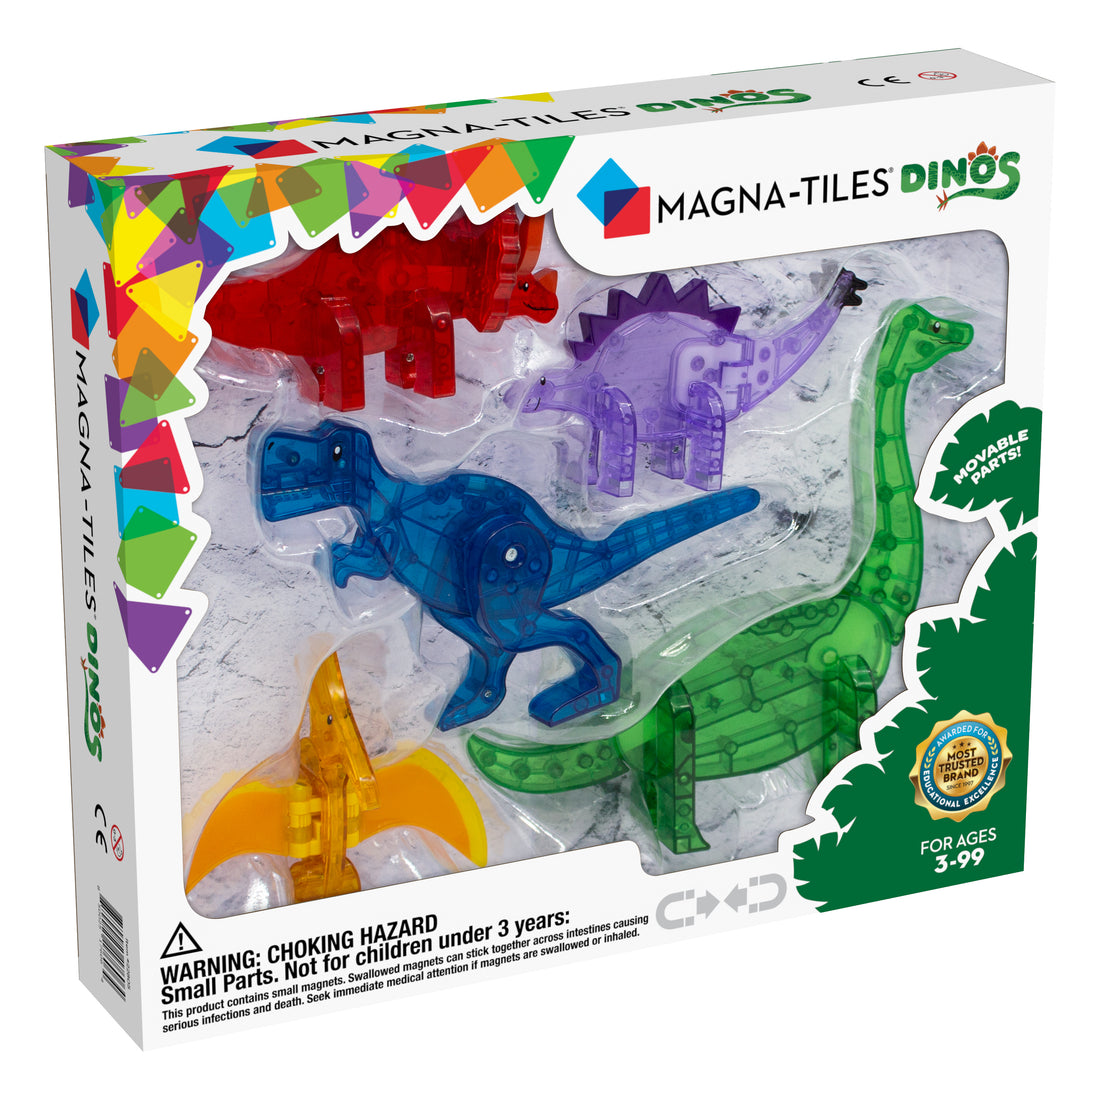 magna-tiles-tiles-dinos-5-piece-set-magt-22805- (2)